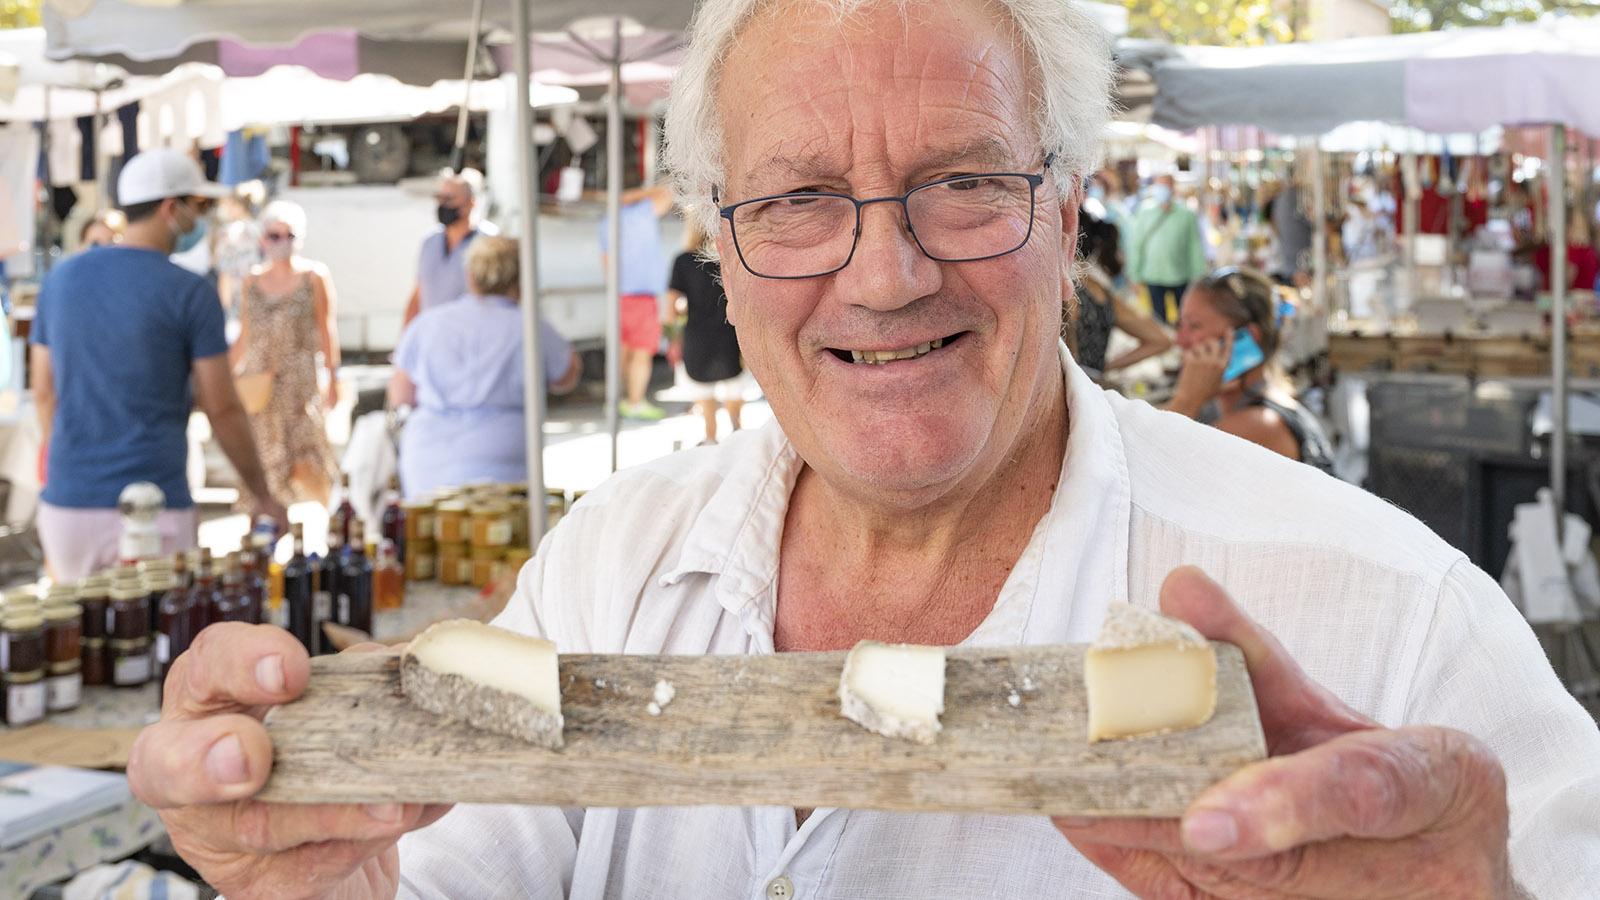 Loic de Saleneuve verkauft auf dem Markt von Saint-Tropez seine hausgemachten Ziegenkäse. Foto: Hilke Maunder